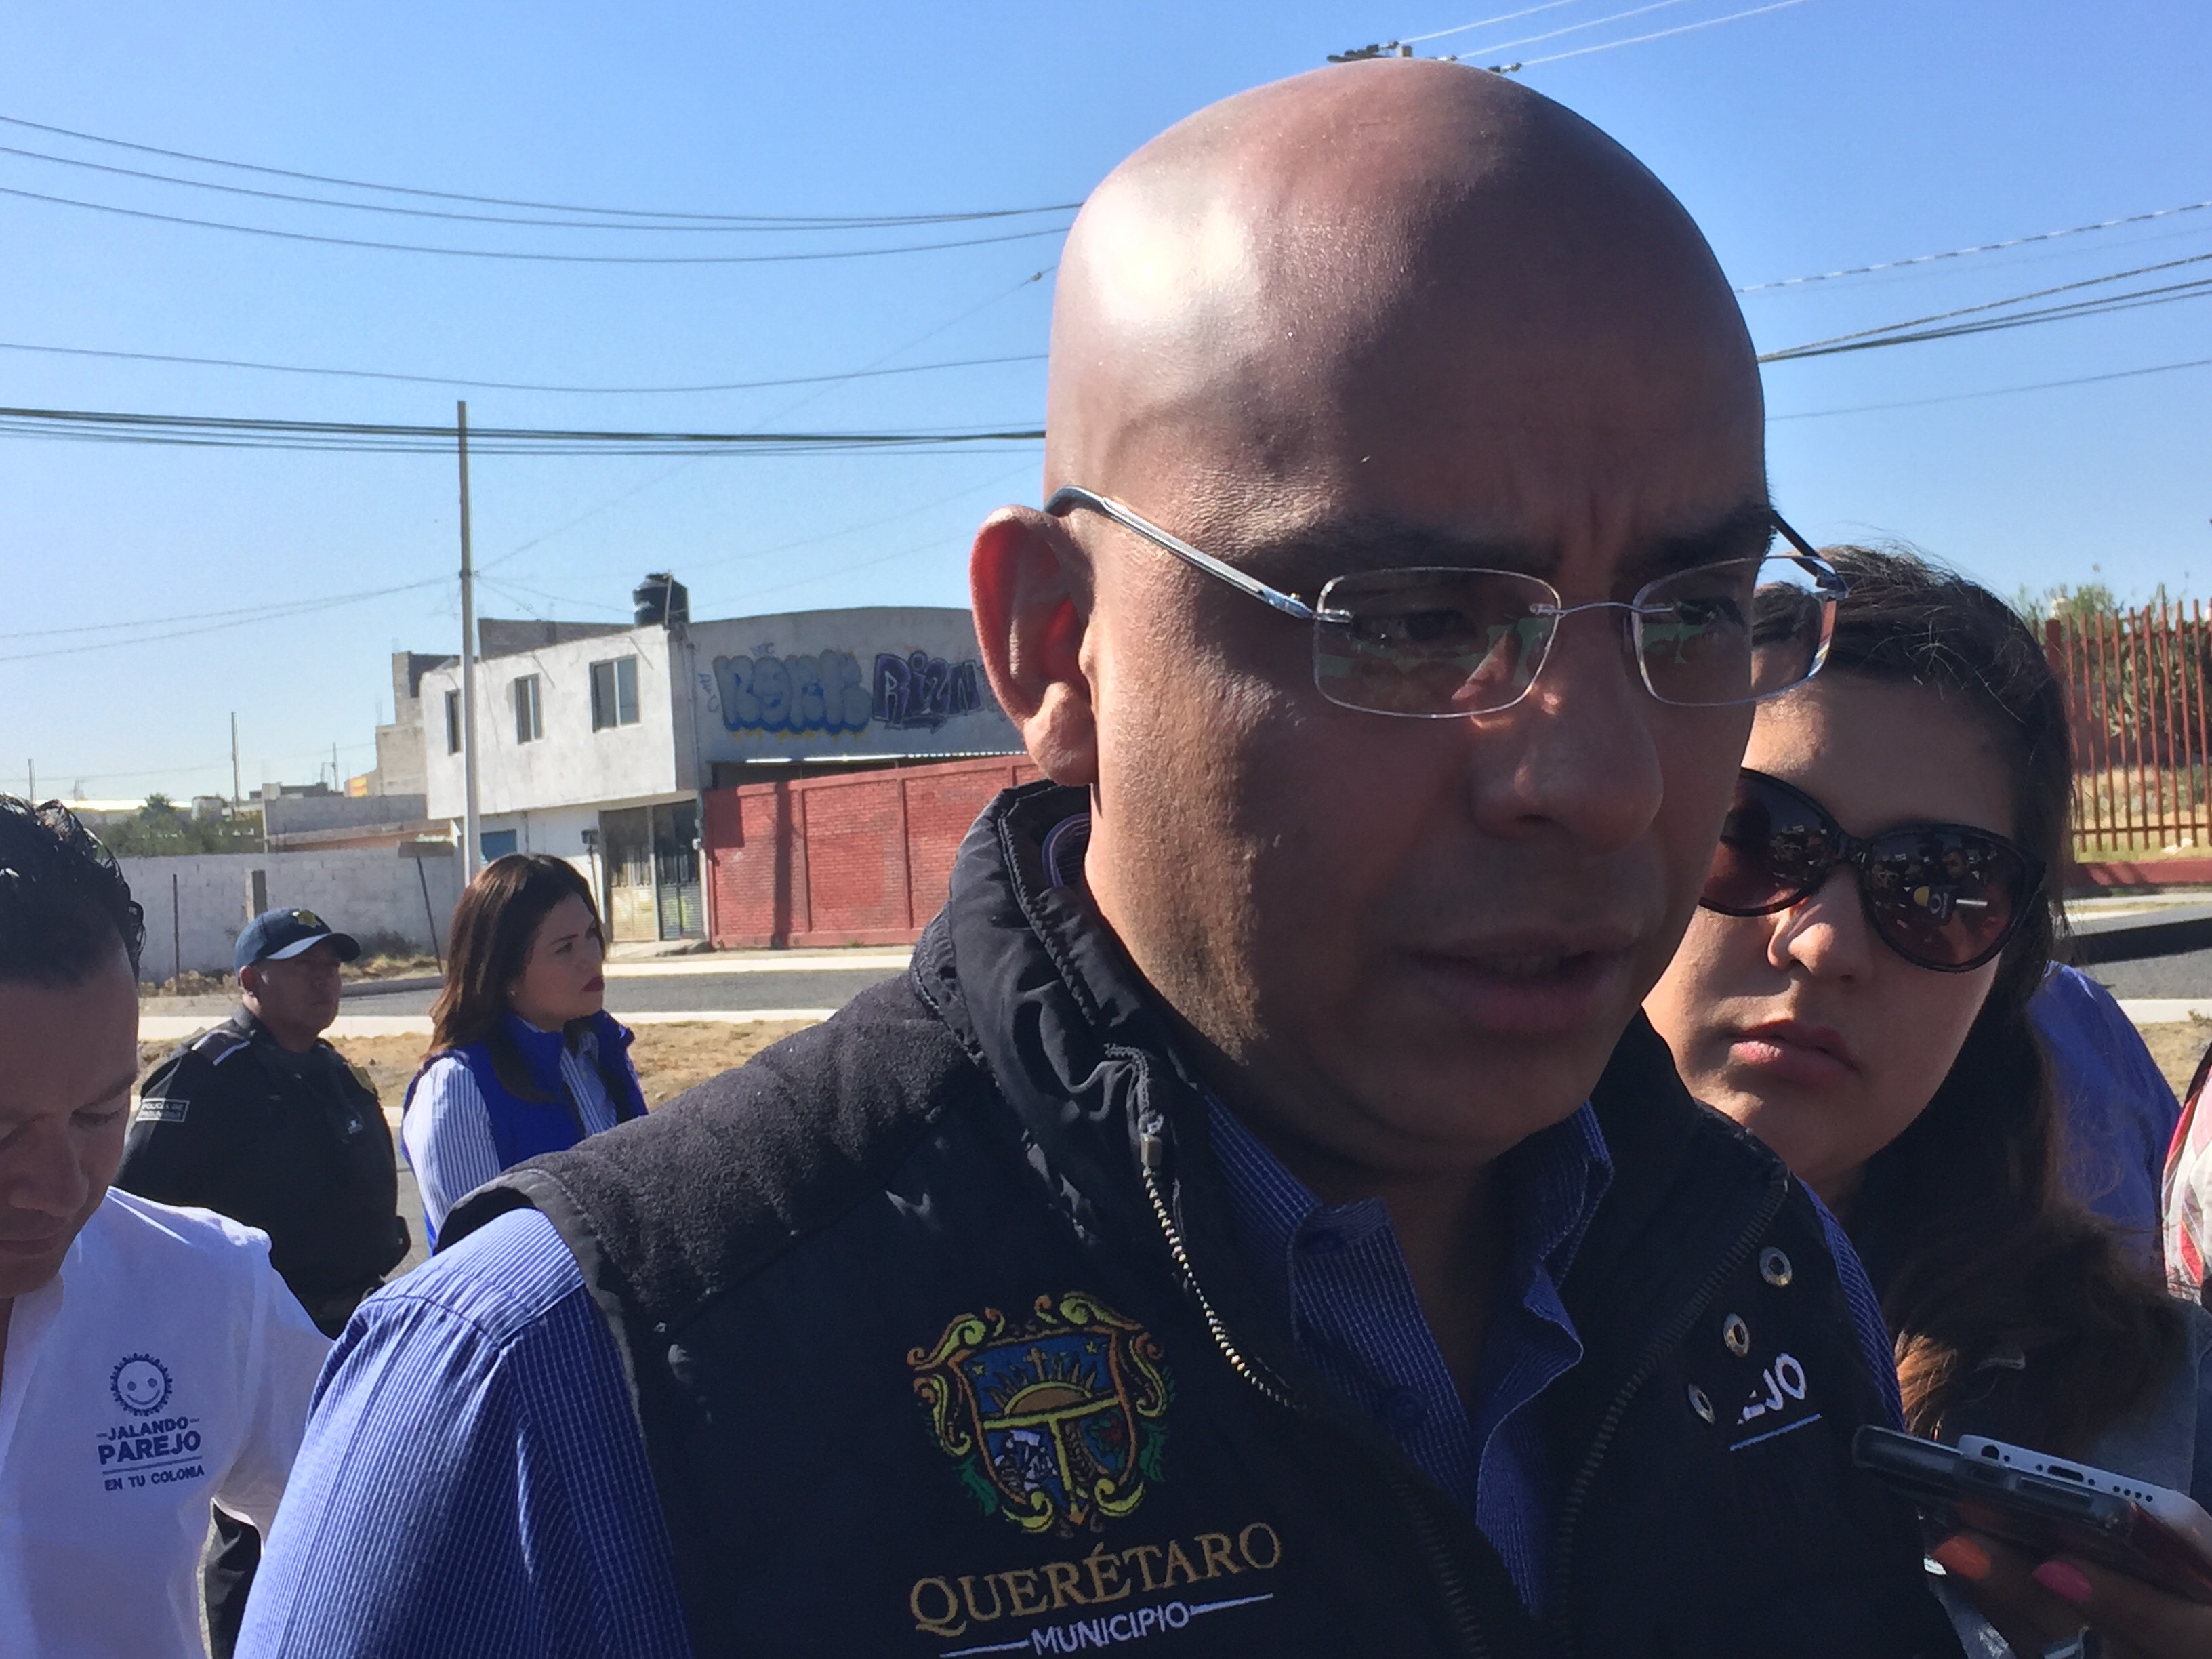  Arcos lectores han permitido detectar 75 autos robados en 45 días: Marcos Aguilar